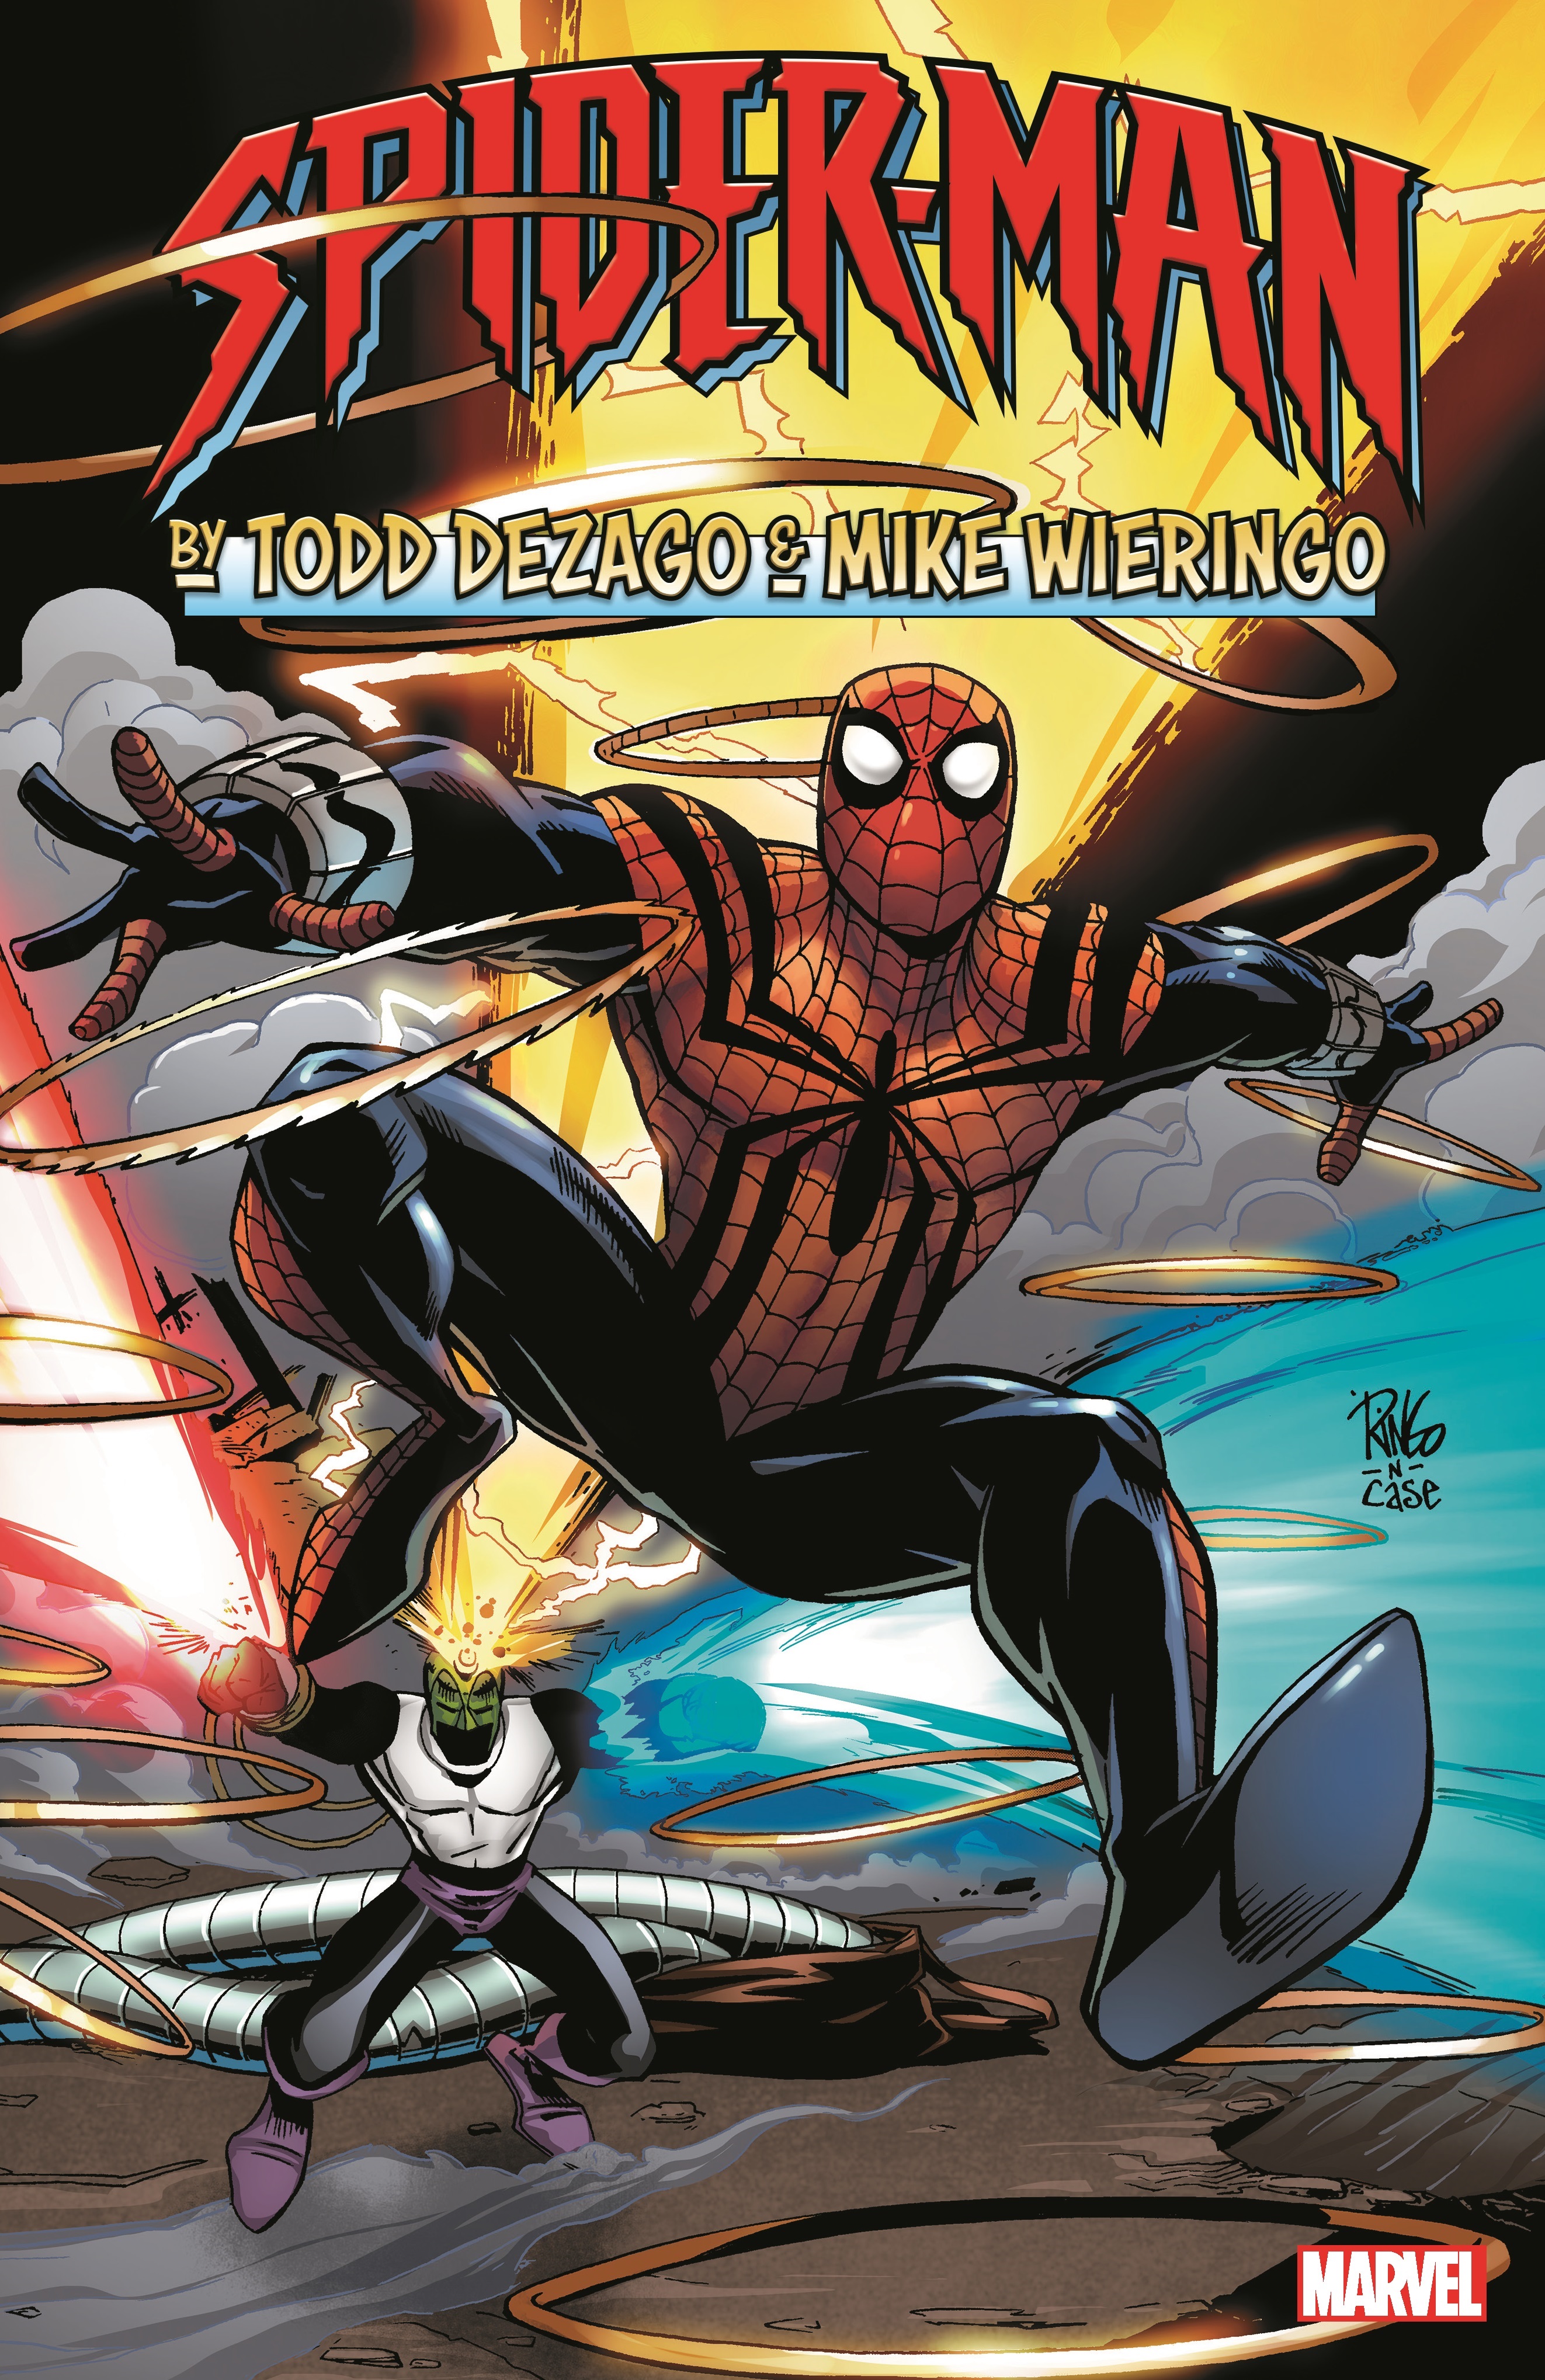 Spider-Man by Todd Dezago & Mike Wieringo Vol. 1 (Trade Paperback)